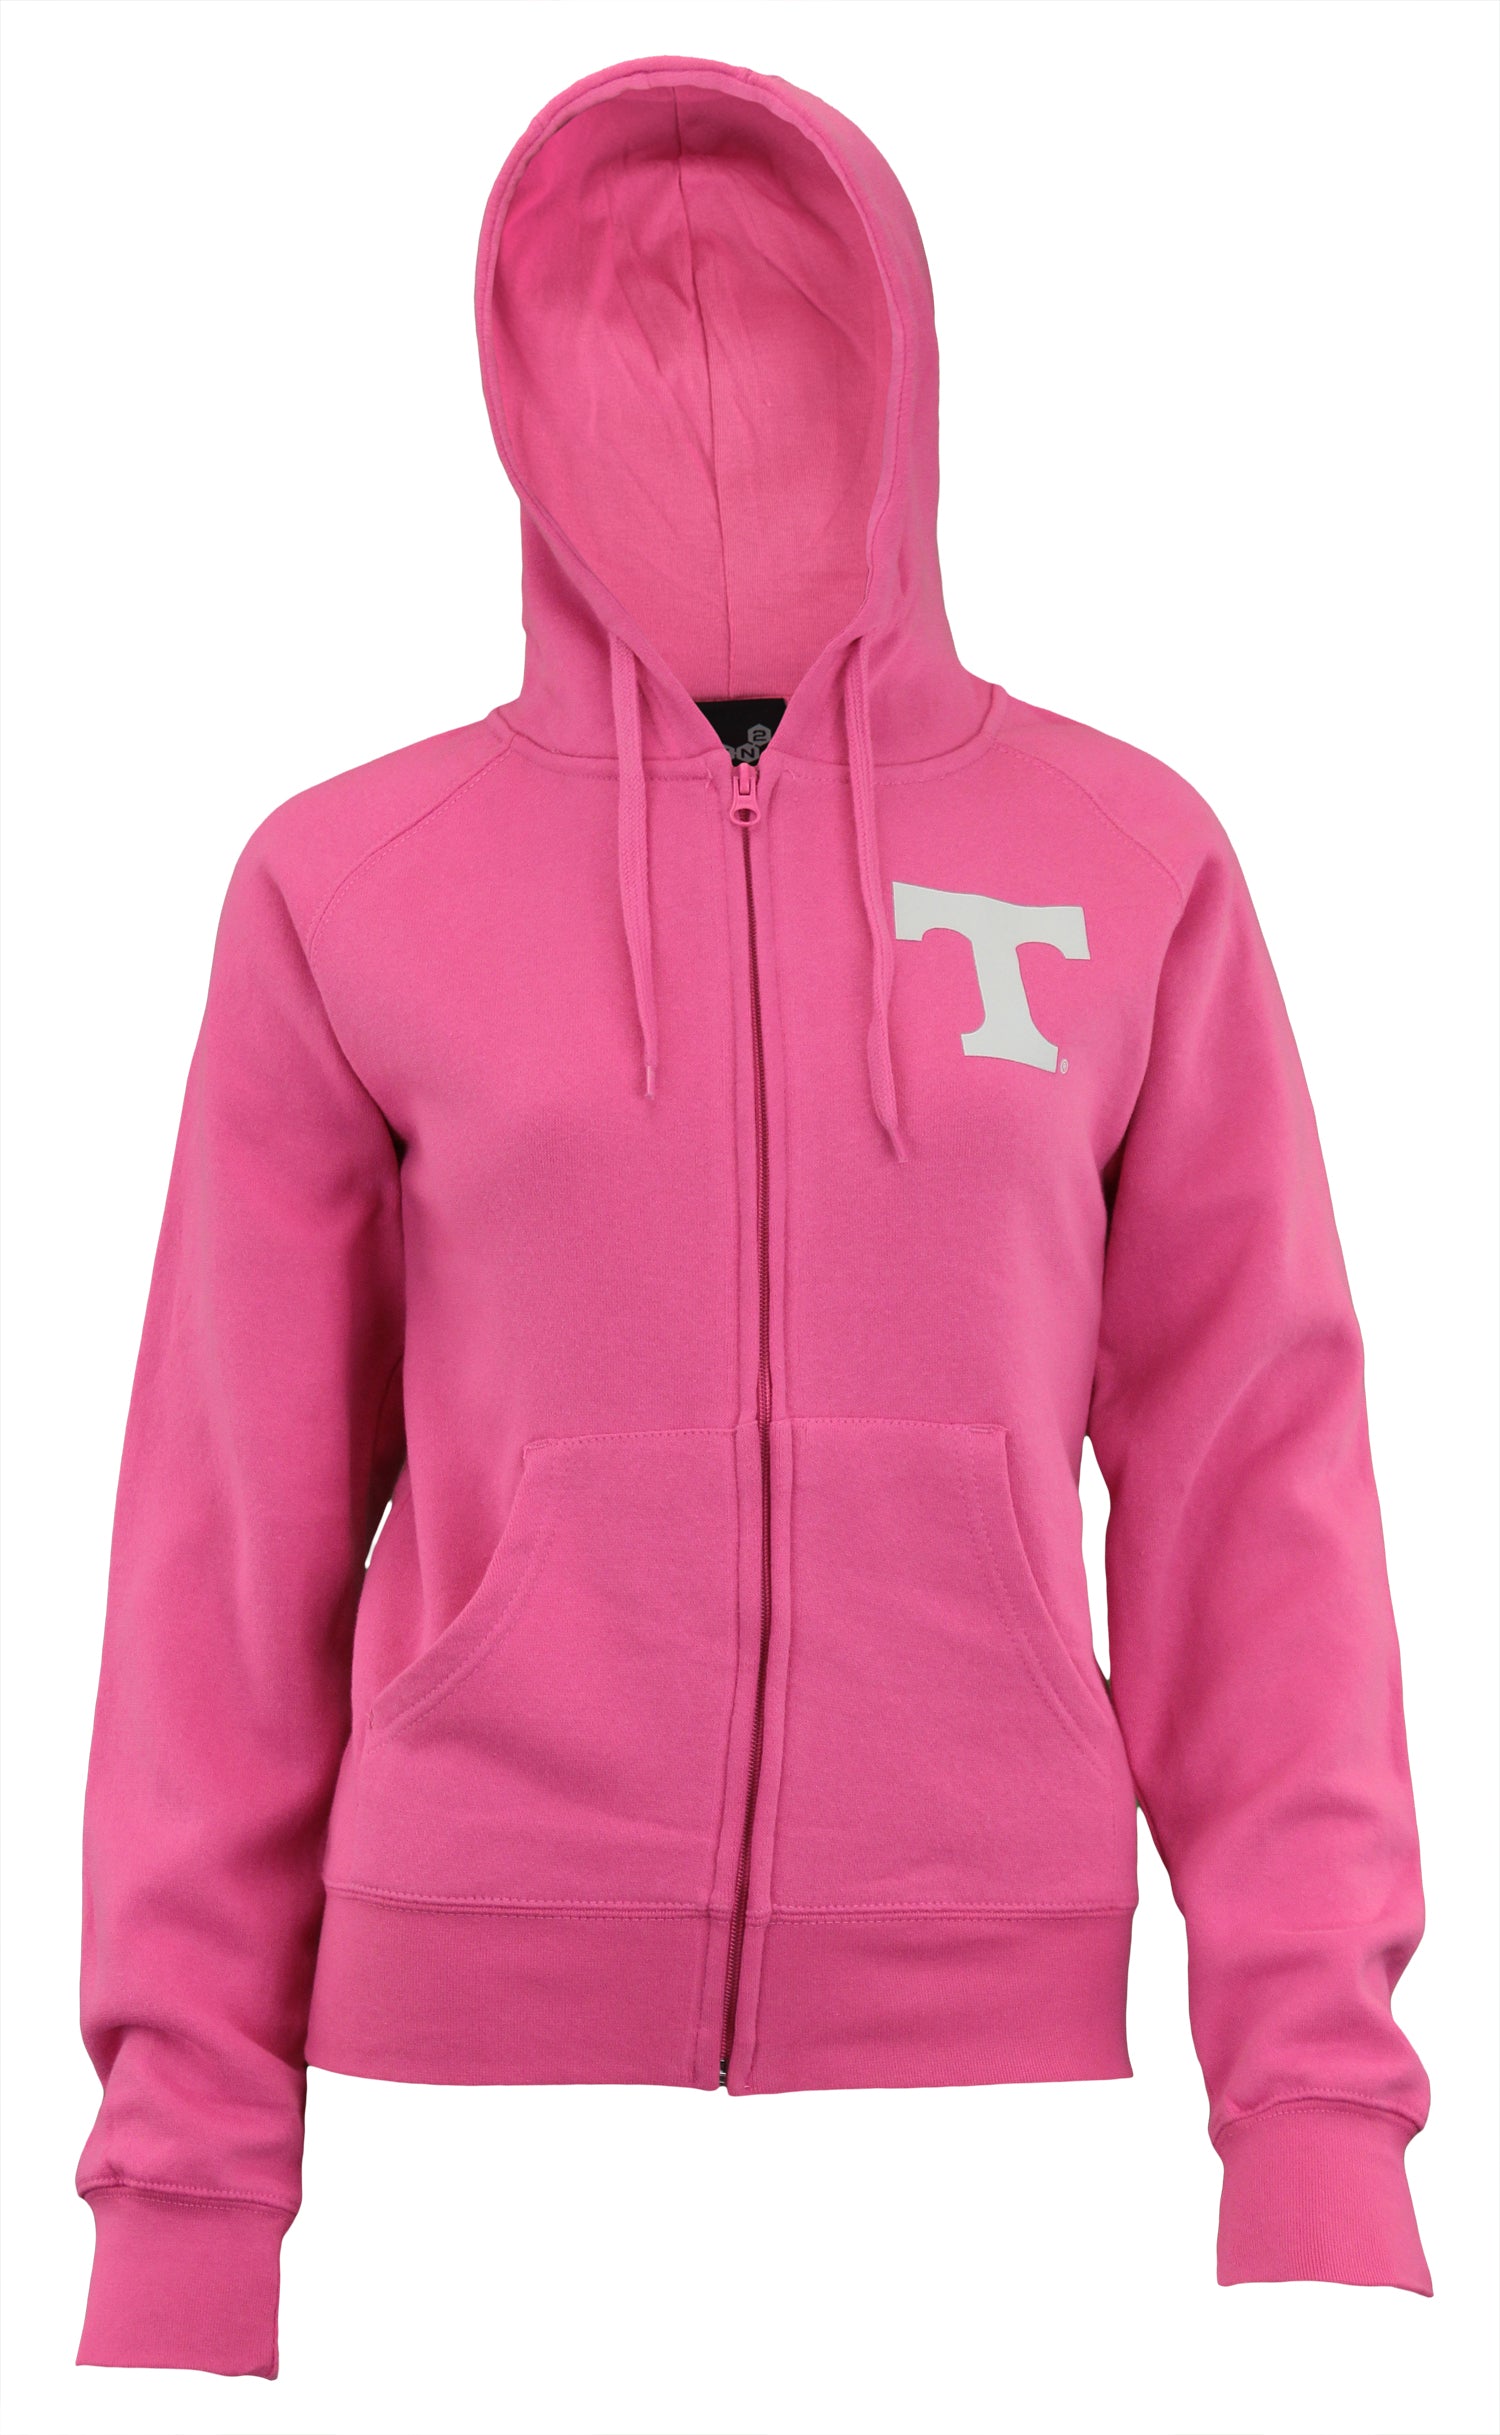 tennessee zip up hoodie